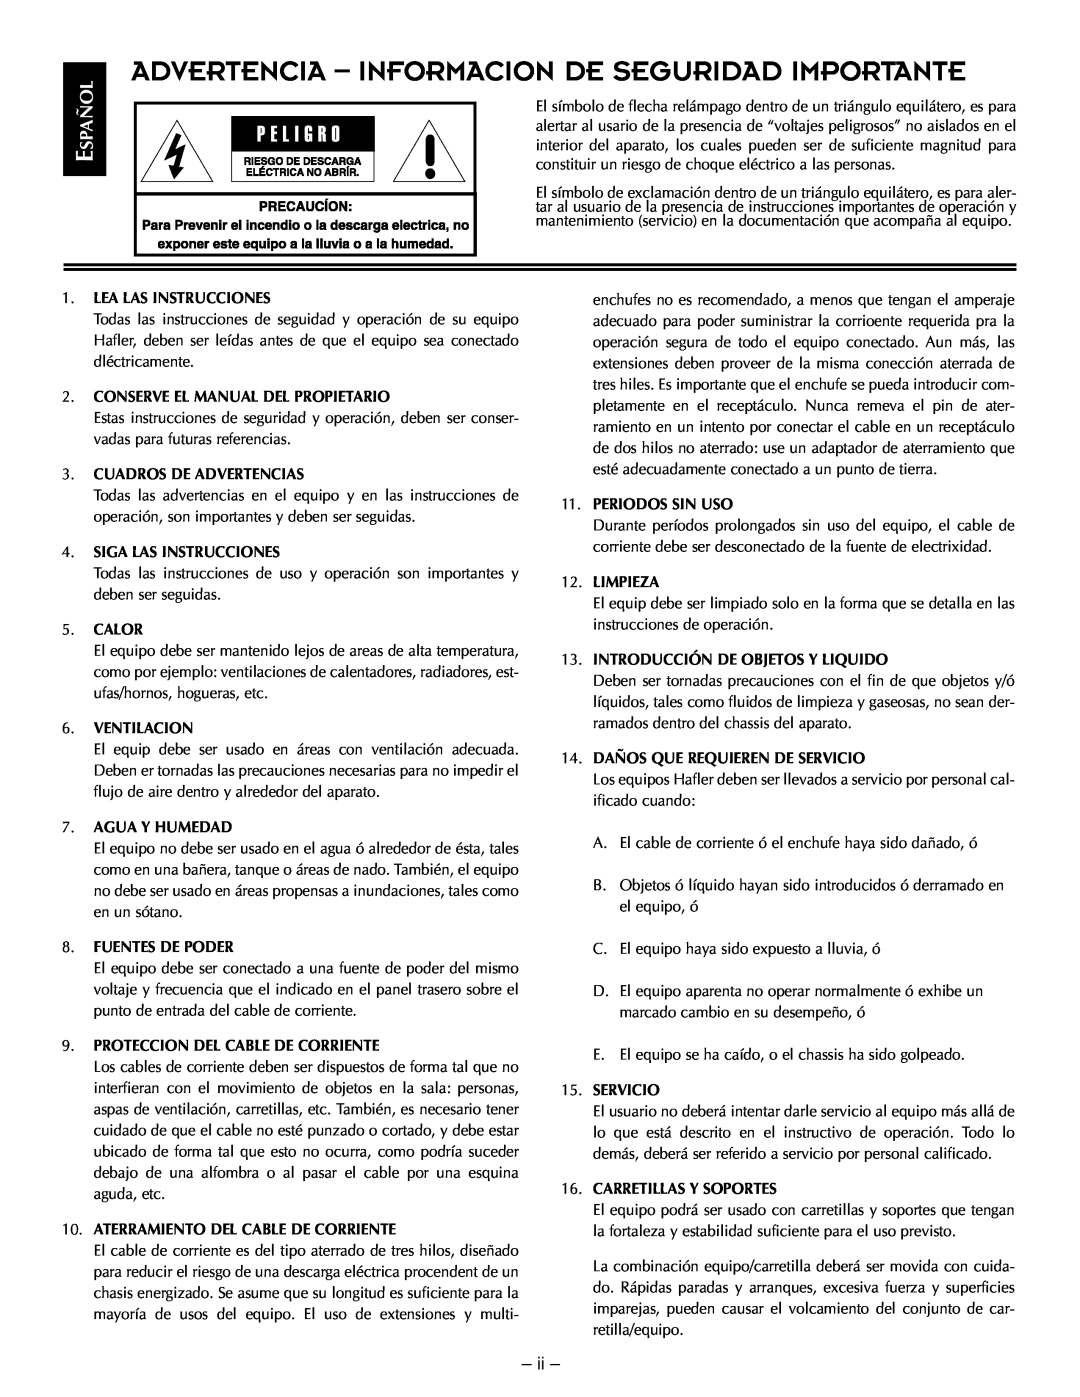 Hafler TRM10.1, TRM12.1 manual Advertencia - Informacion De Seguridad Importante, Español, ii 